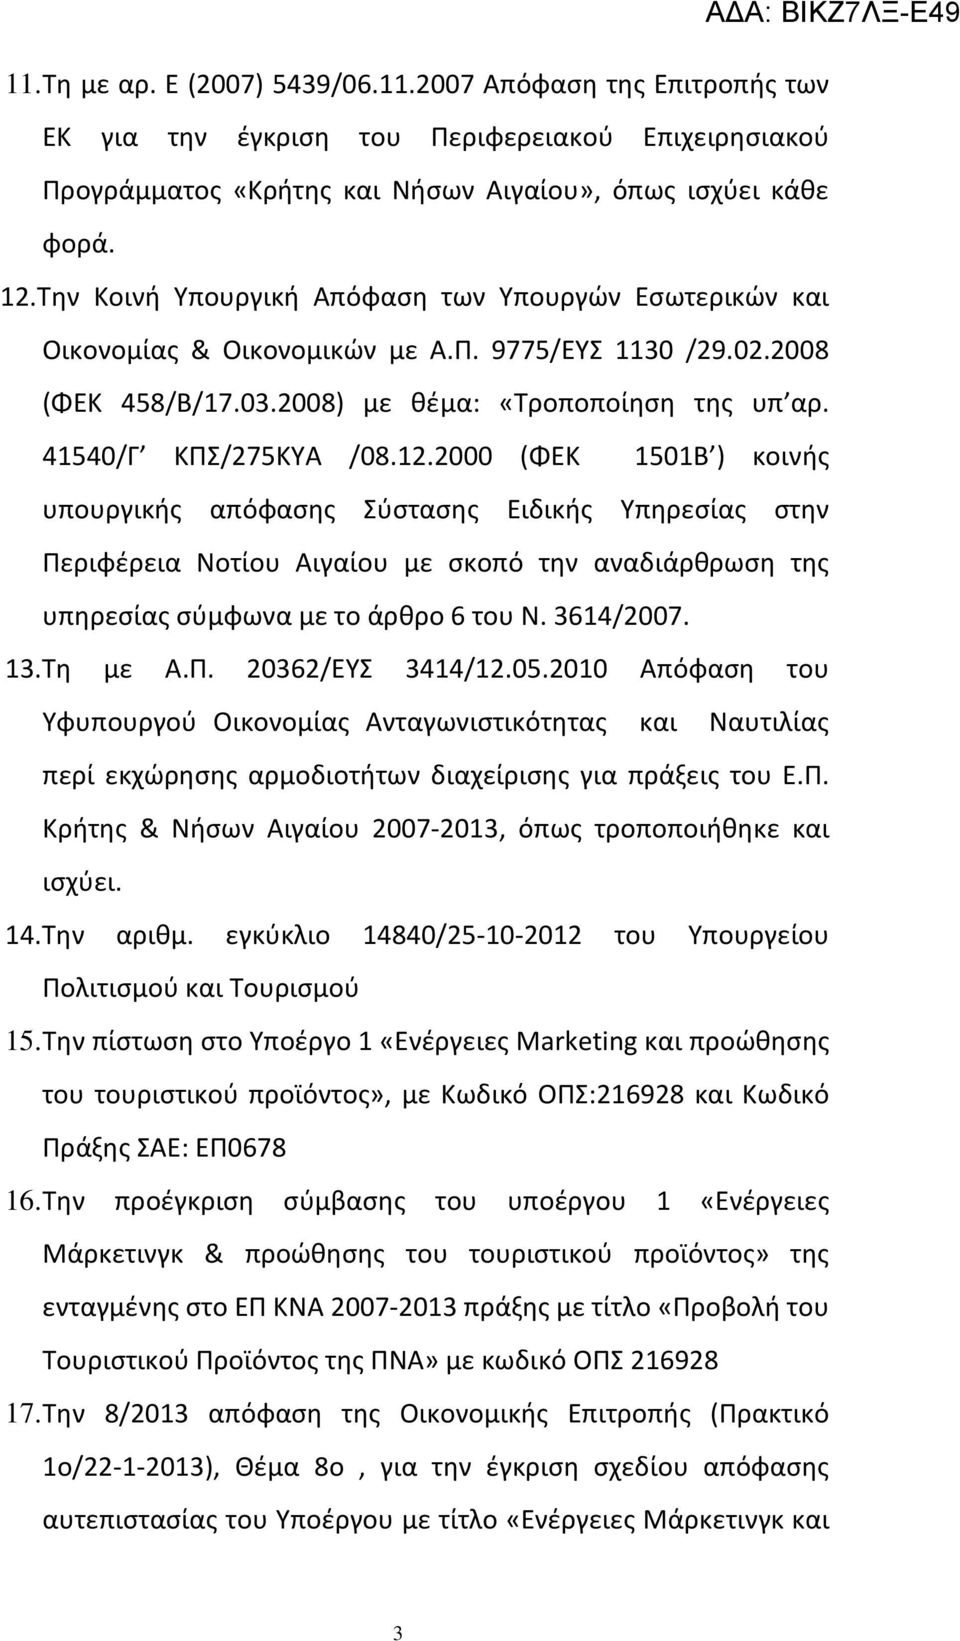 2000 (ΦΕΚ 1501Β ) κοινής υπουργικής απόφασης Σύστασης Ειδικής Υπηρεσίας στην Περιφέρεια Νοτίου Αιγαίου με σκοπό την αναδιάρθρωση της υπηρεσίας σύμφωνα με το άρθρο 6 του Ν. 3614/2007. 13.Τη με Α.Π. 20362/ΕΥΣ 3414/12.